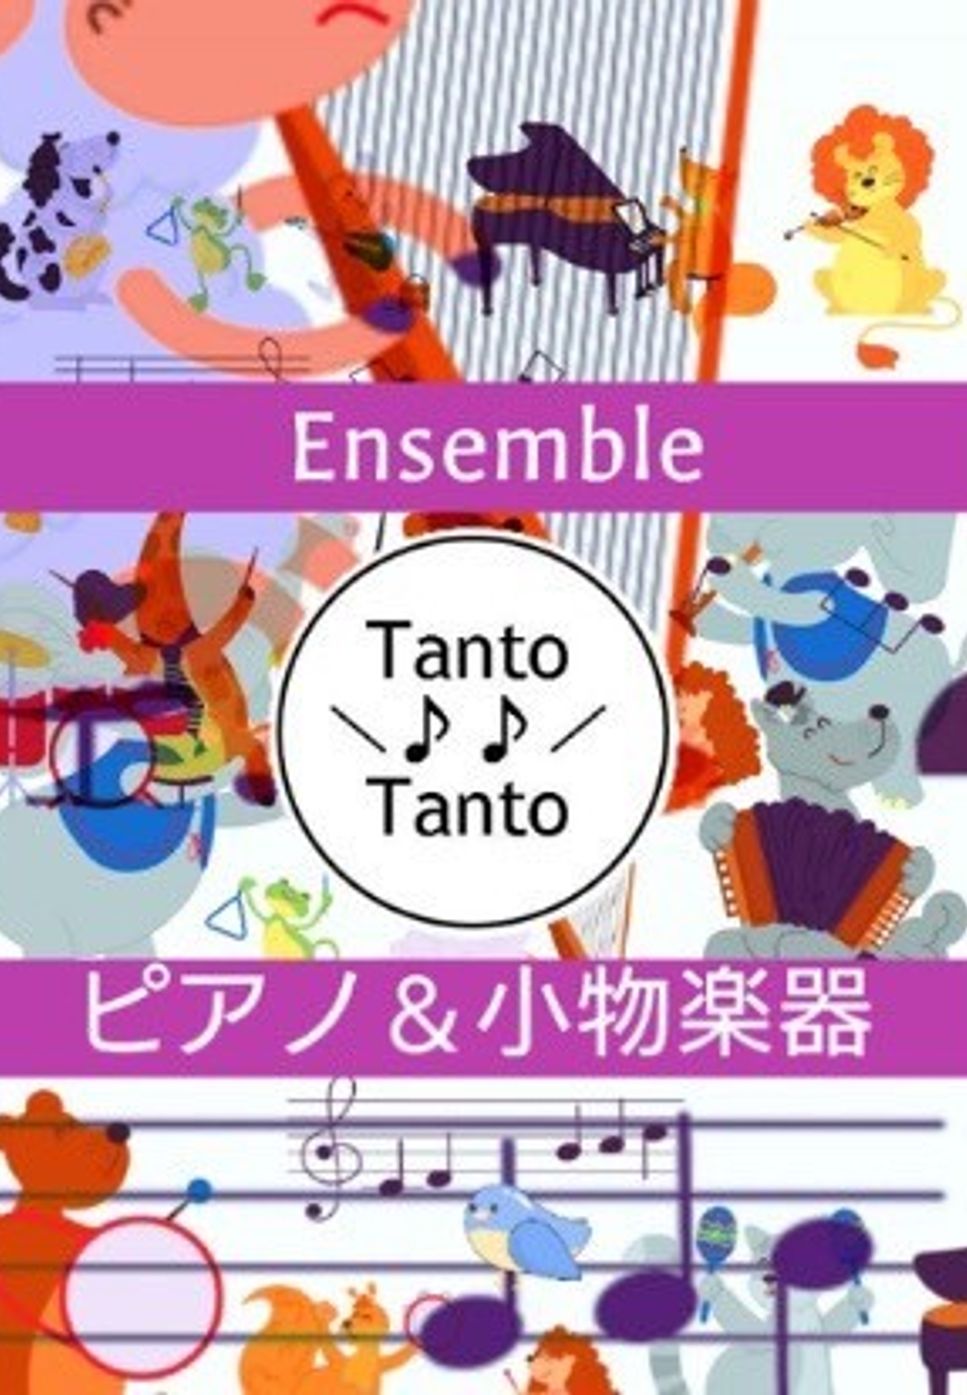 ロバート バーナード シャーマン　リチャード モートン シャーマン - 小さな世界 (It’s a Small World 世界一周の旅 Piano Ensemble in C) by Tanto Tanto